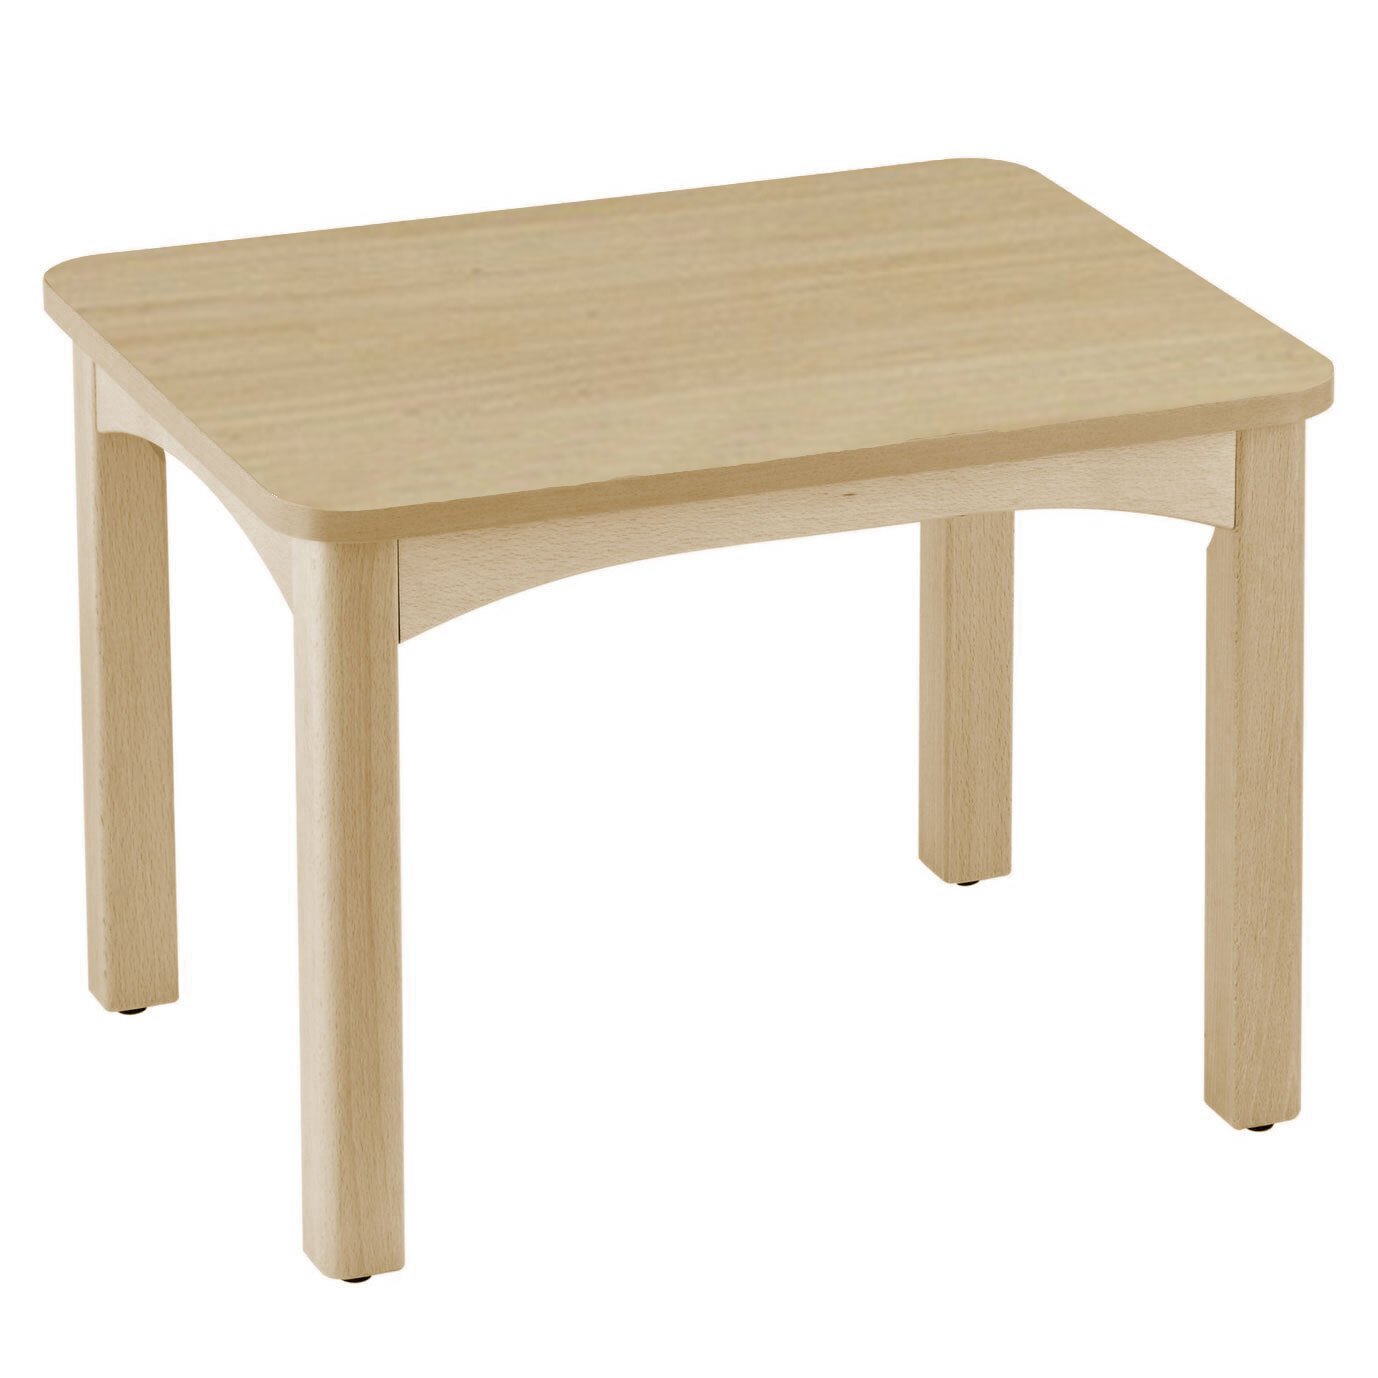 Table en bois pour crèche 60 x 50 cm t1 naturel